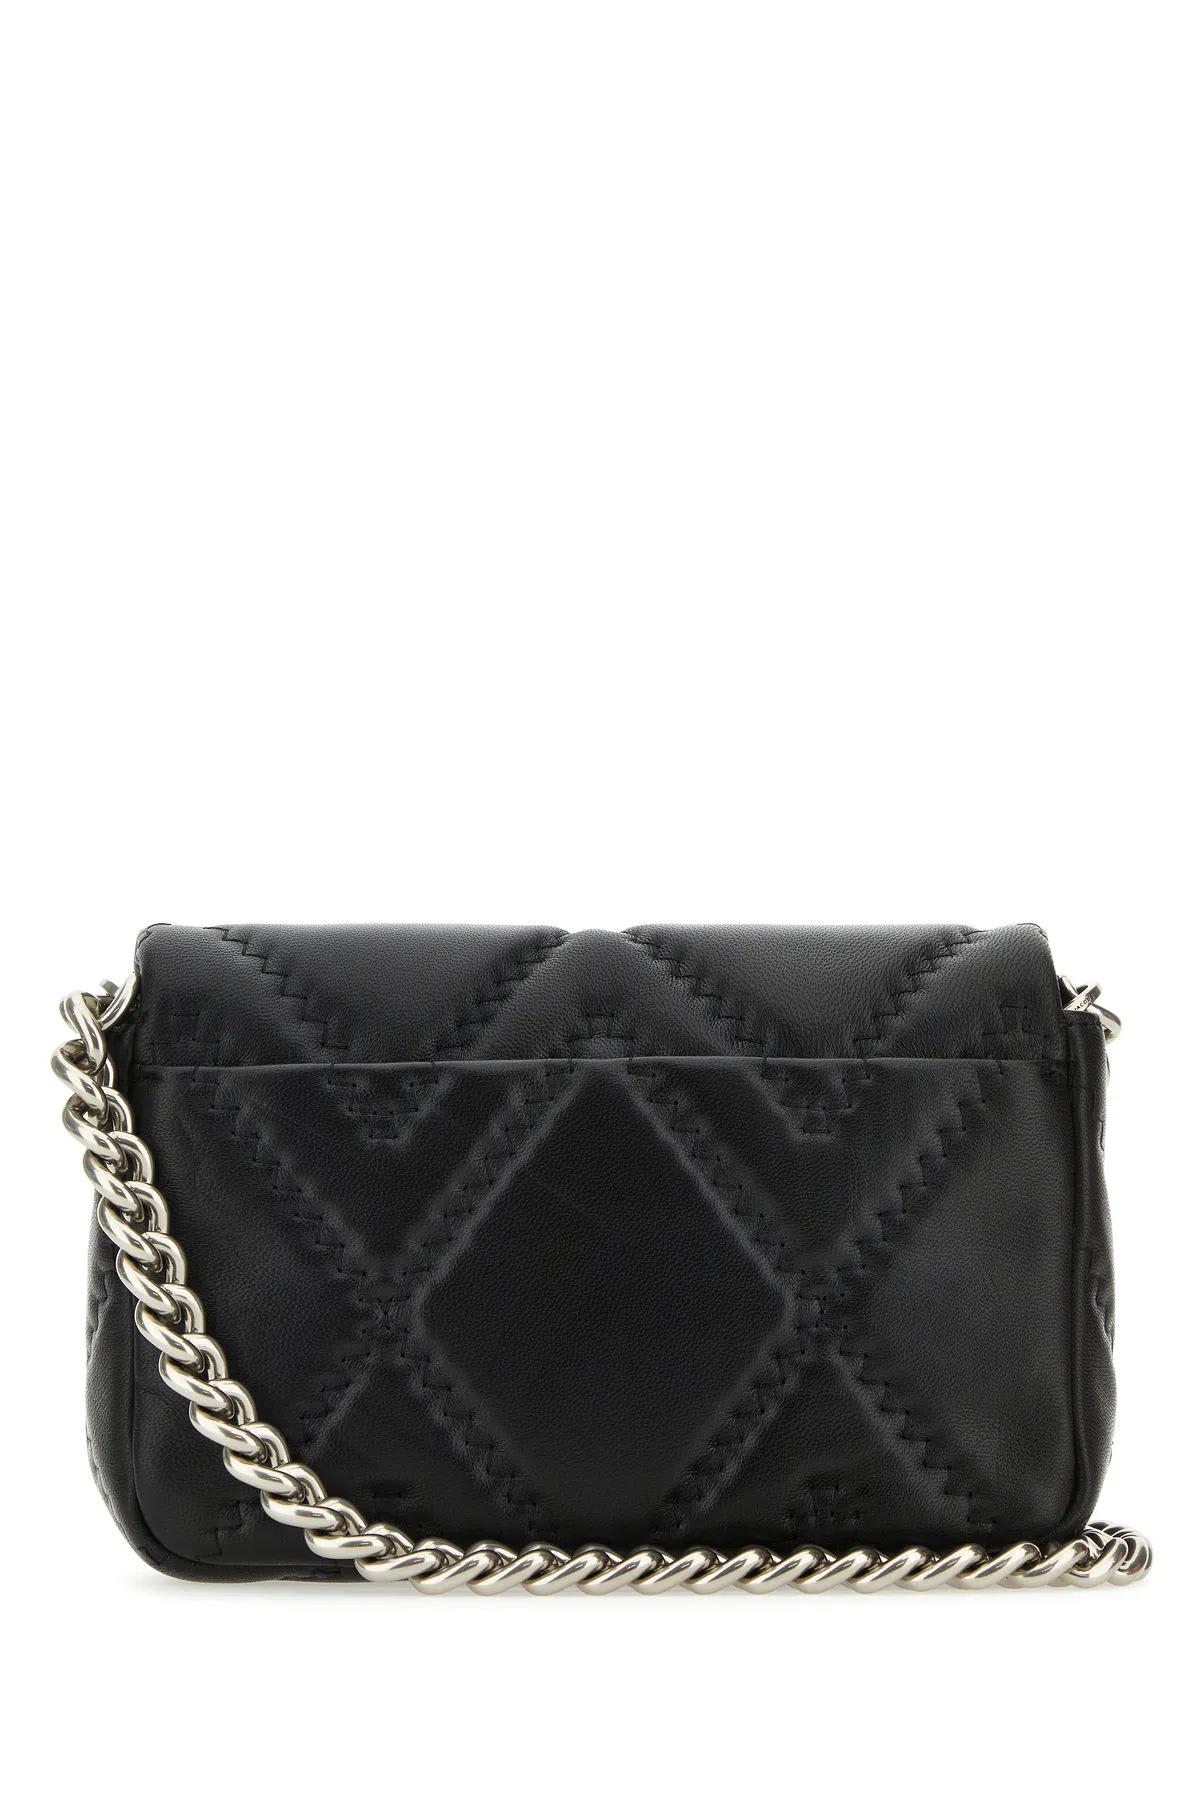 Shop Marc Jacobs Black Leather J Marc Shoulder Bag